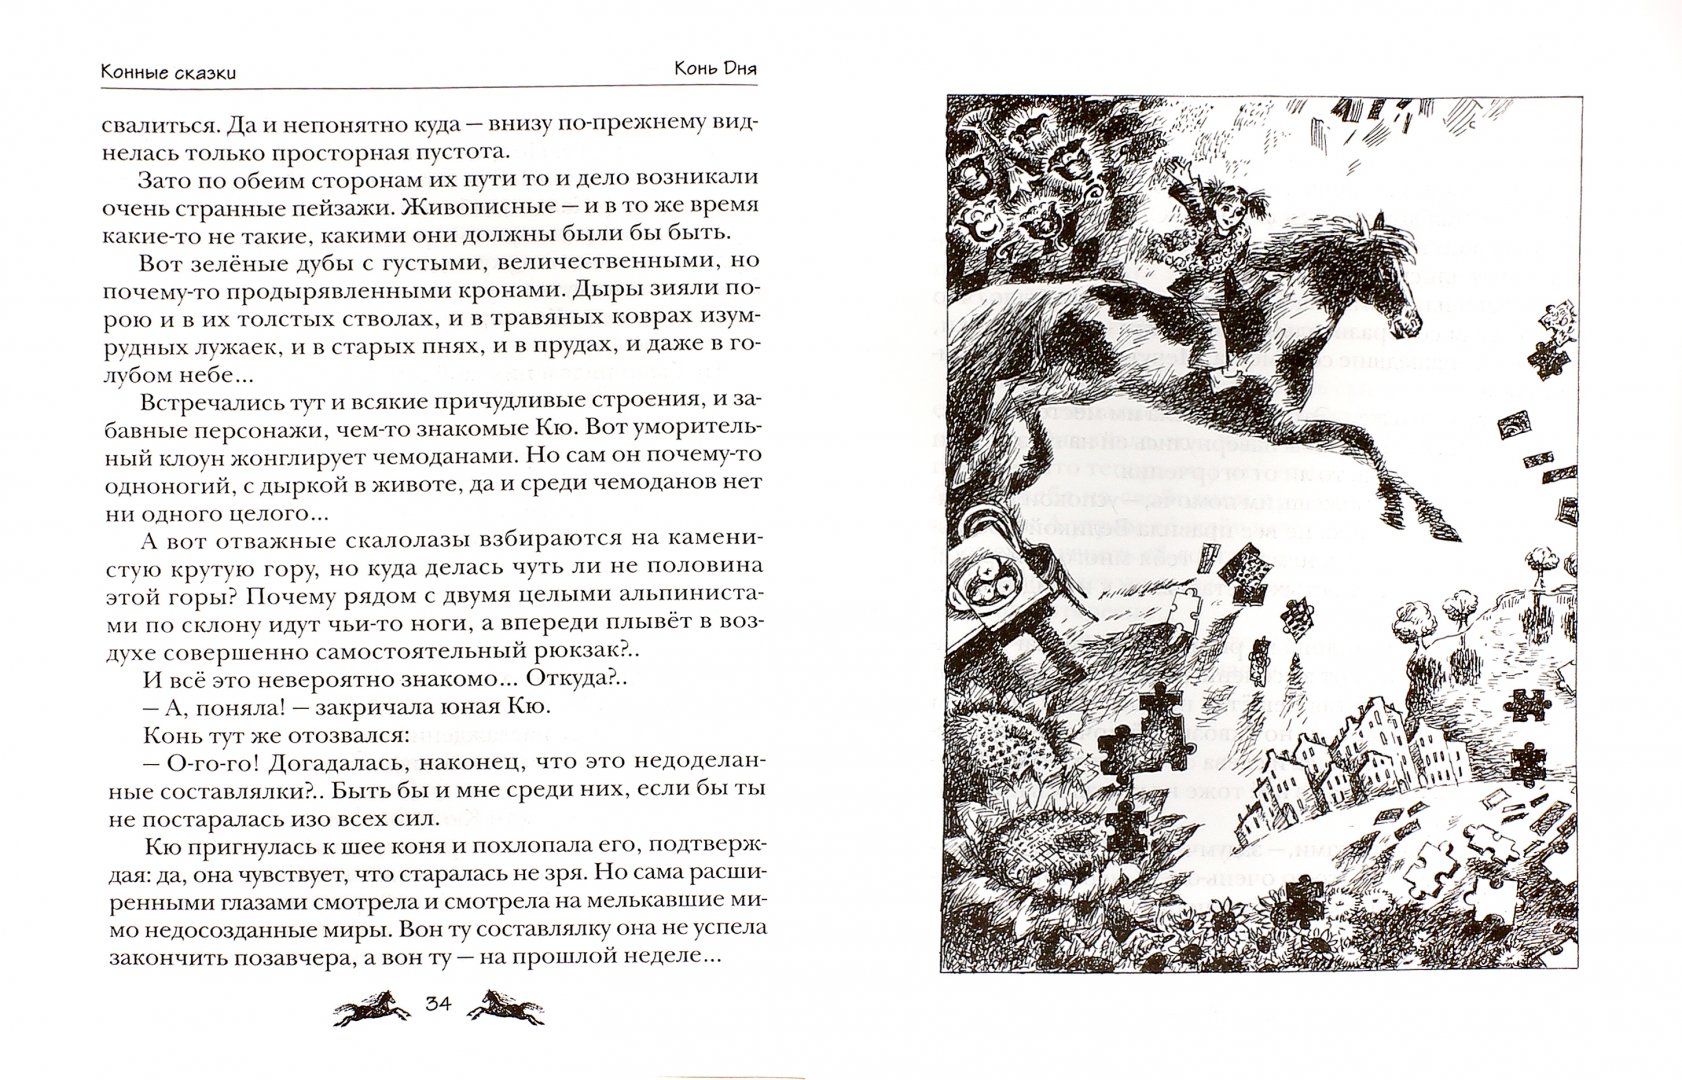 Иллюстрация 1 из 9 для Конные сказки - Виктор Кротов | Лабиринт - книги. Источник: Лабиринт